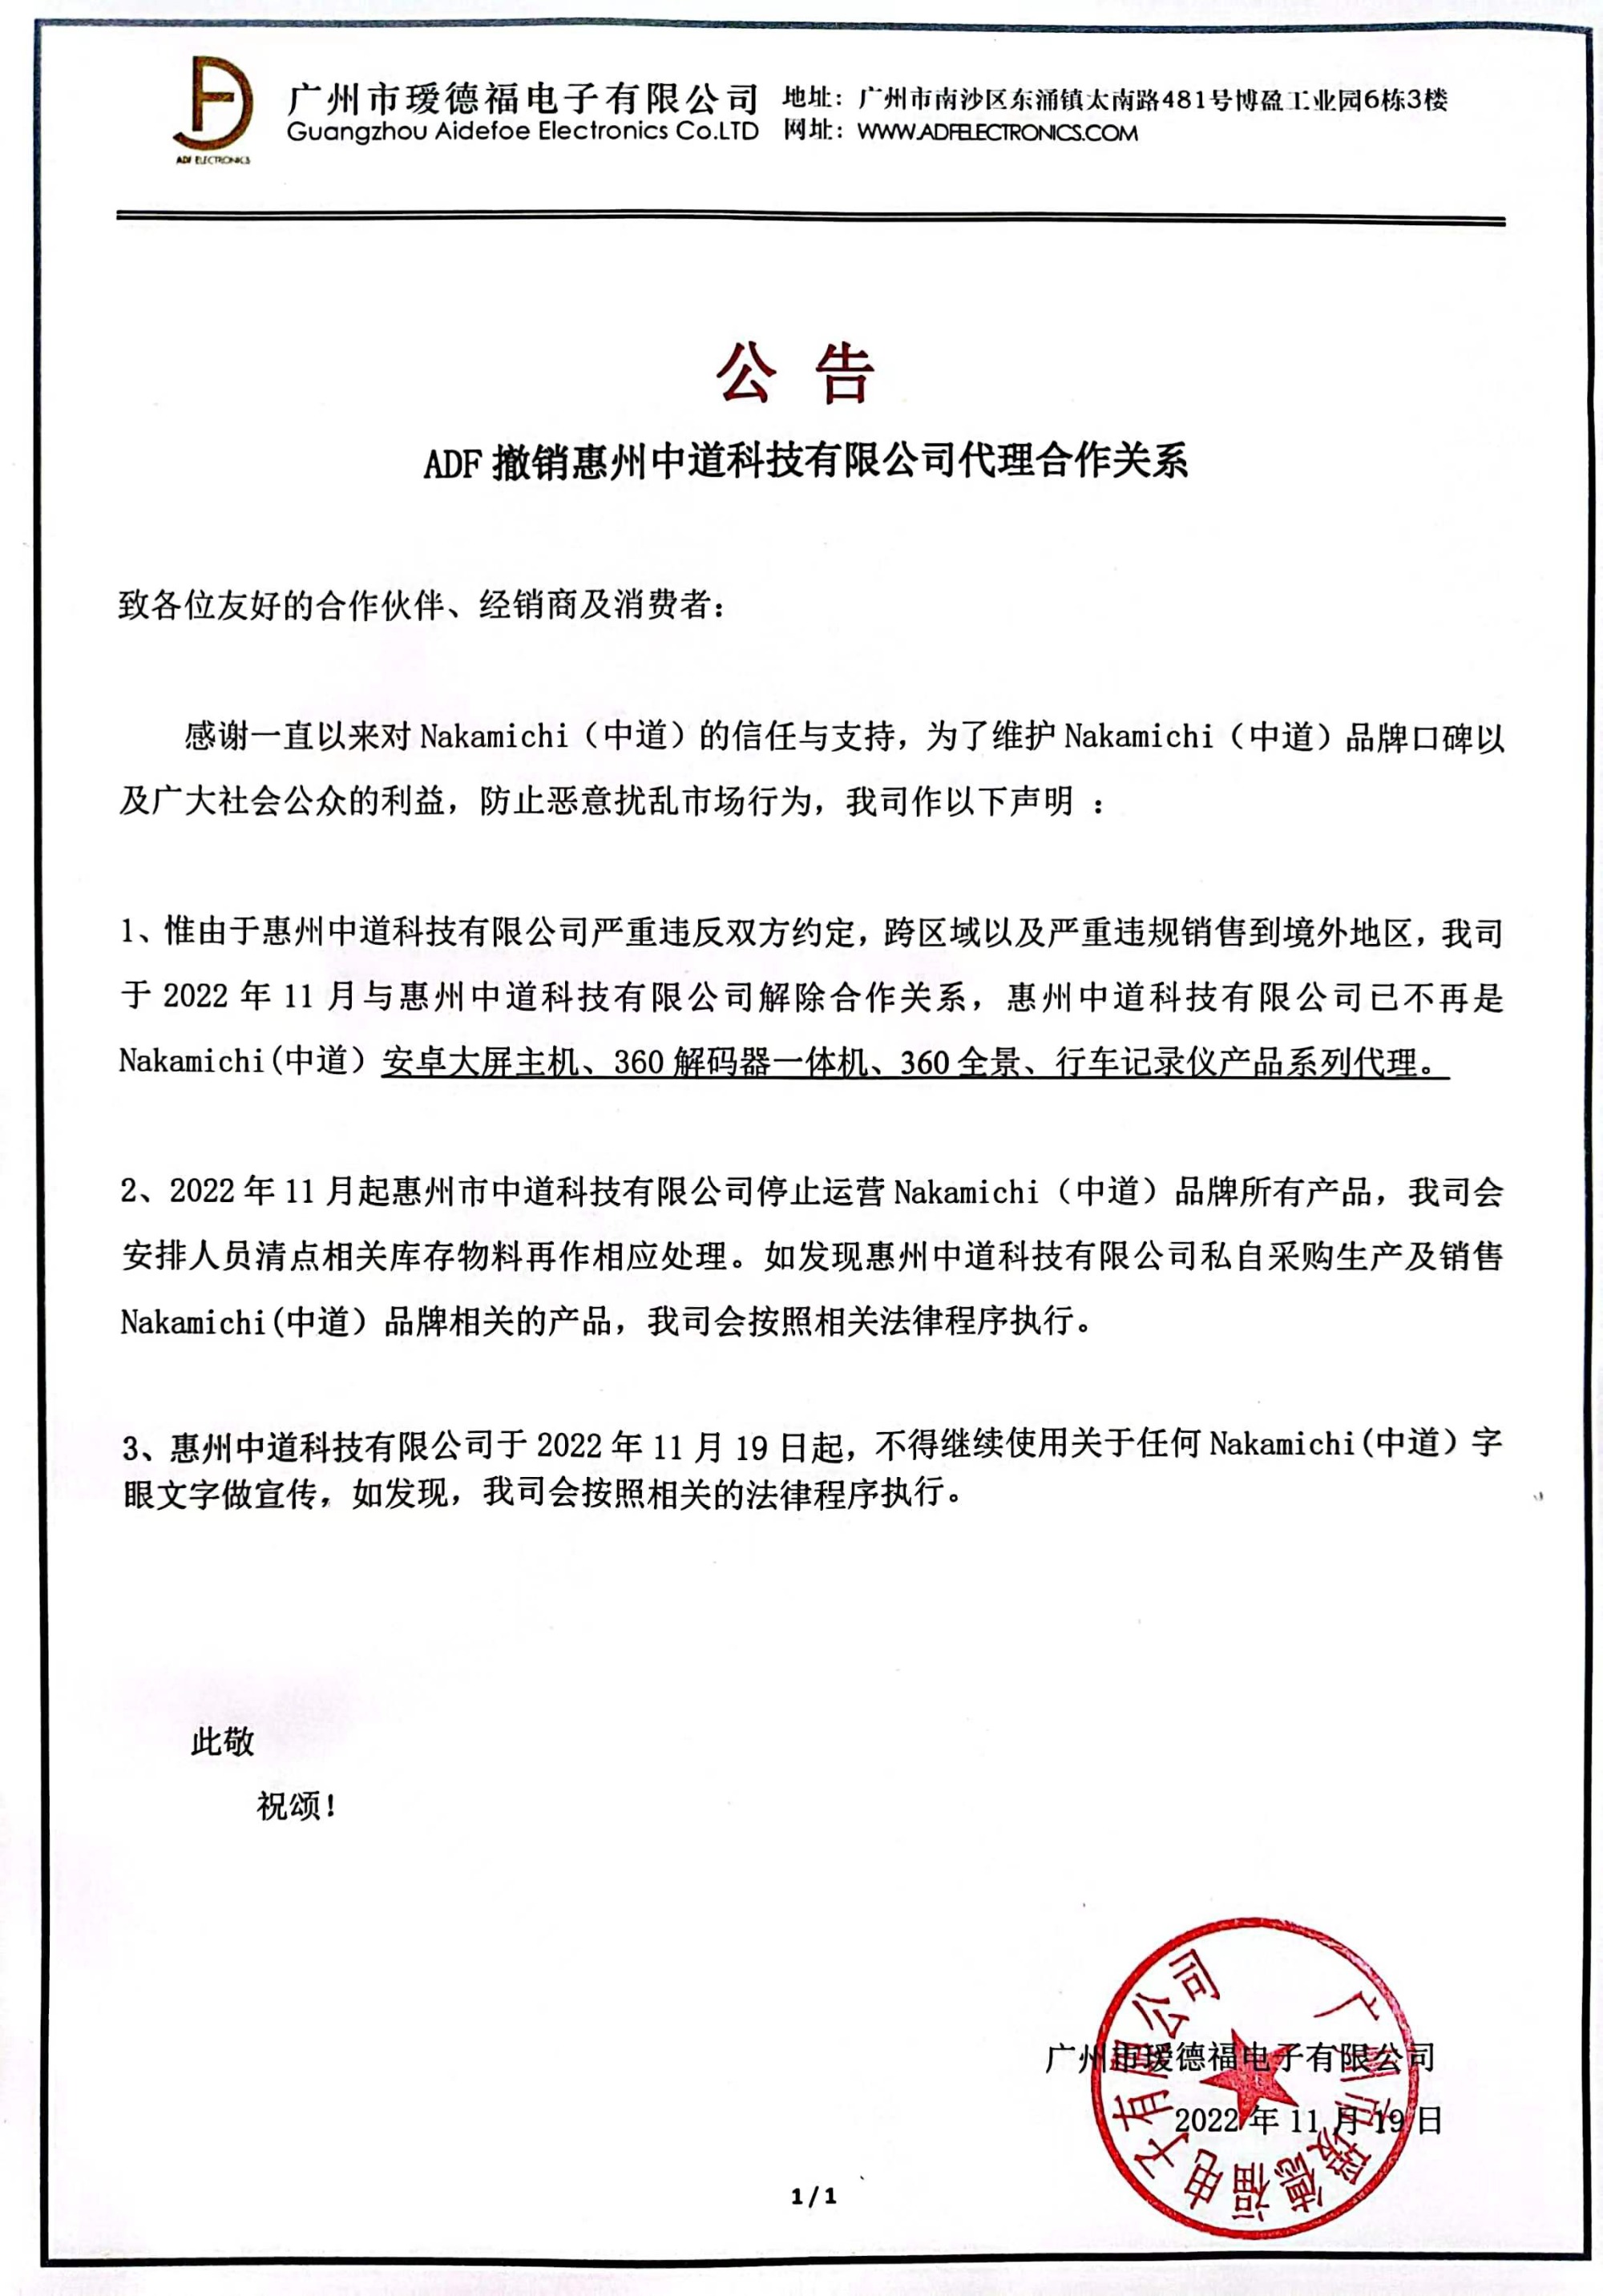 ADF撤销惠州中道科技有限公司代理合作关系